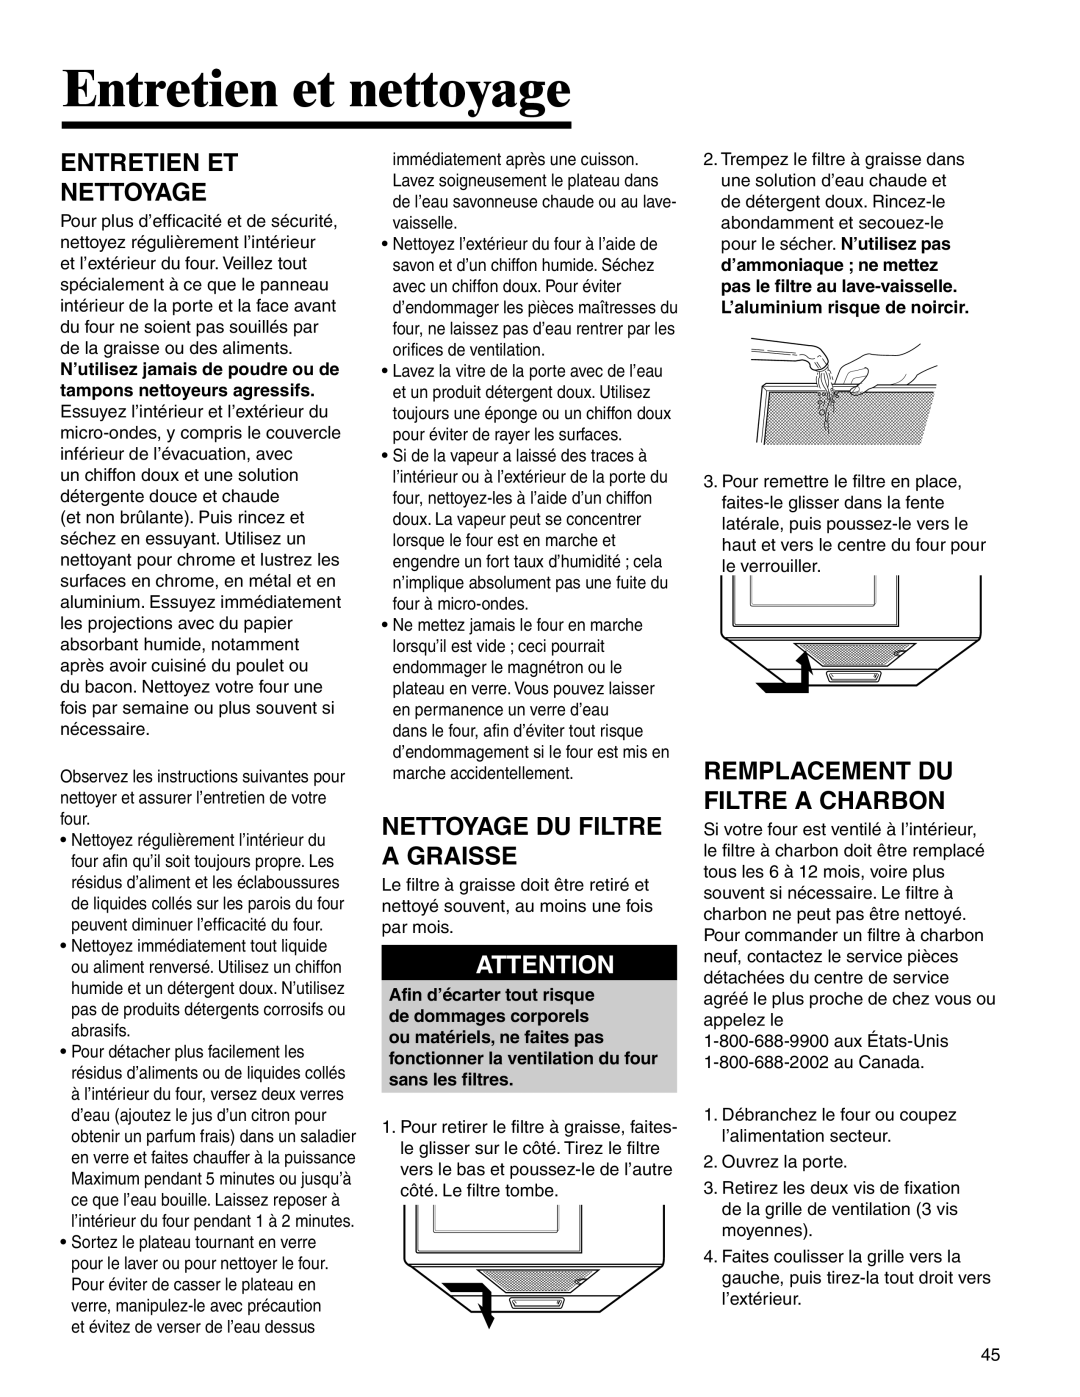 Amana AMV5164BA/BC Entretien et nettoyage, Entretien Et Nettoyage, Nettoyage Du Filtre A Graisse 